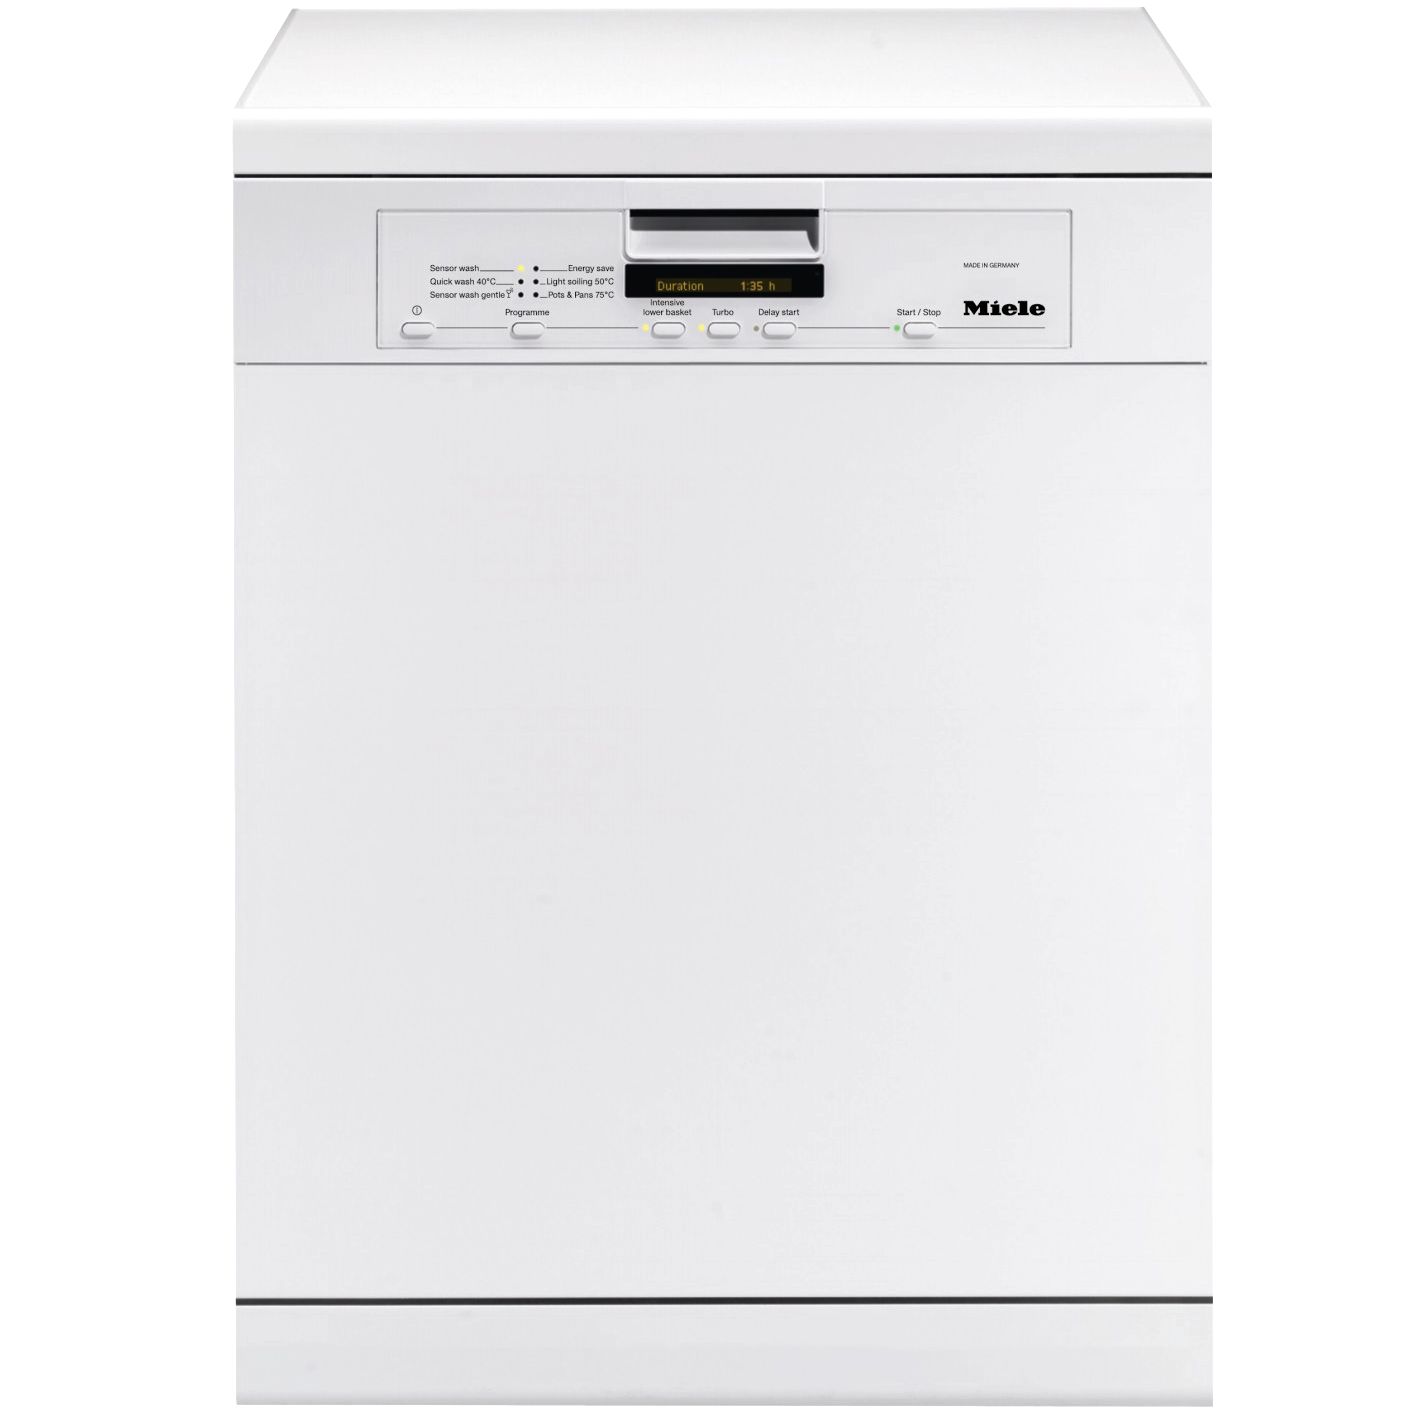 Miele G5500SC Dishwasher, White at John Lewis